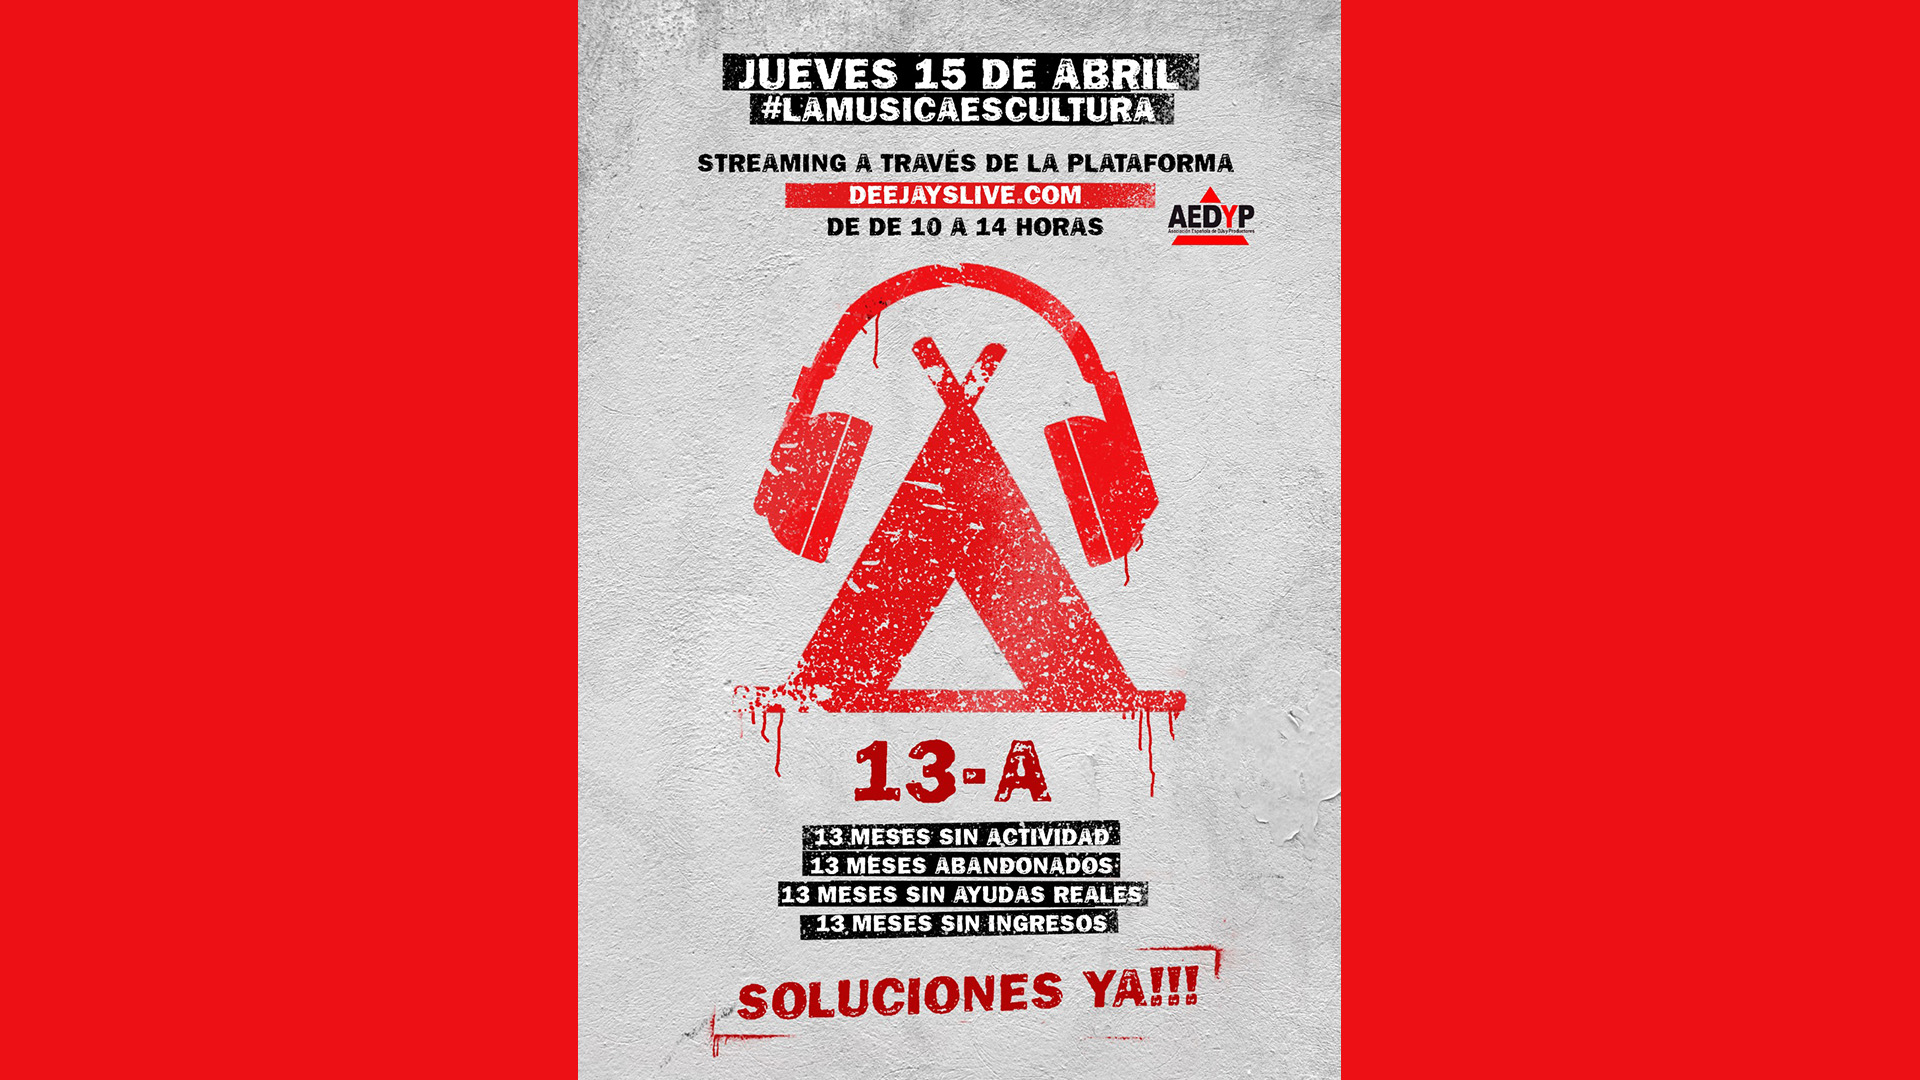 Protesta contra la postura injusta del gobierno sobre los DJs en Valencia